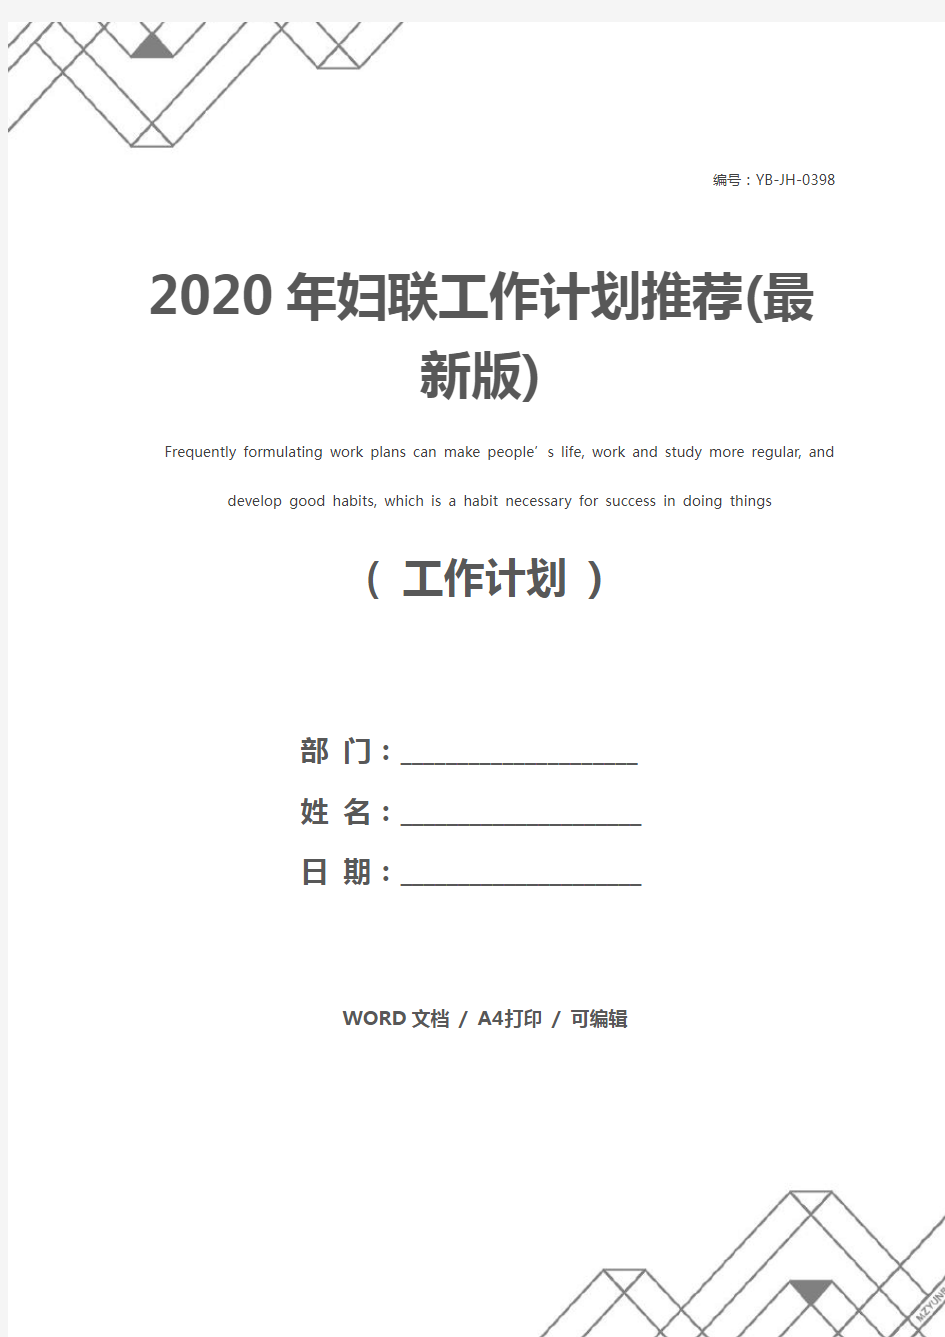 2020年妇联工作计划推荐(最新版)